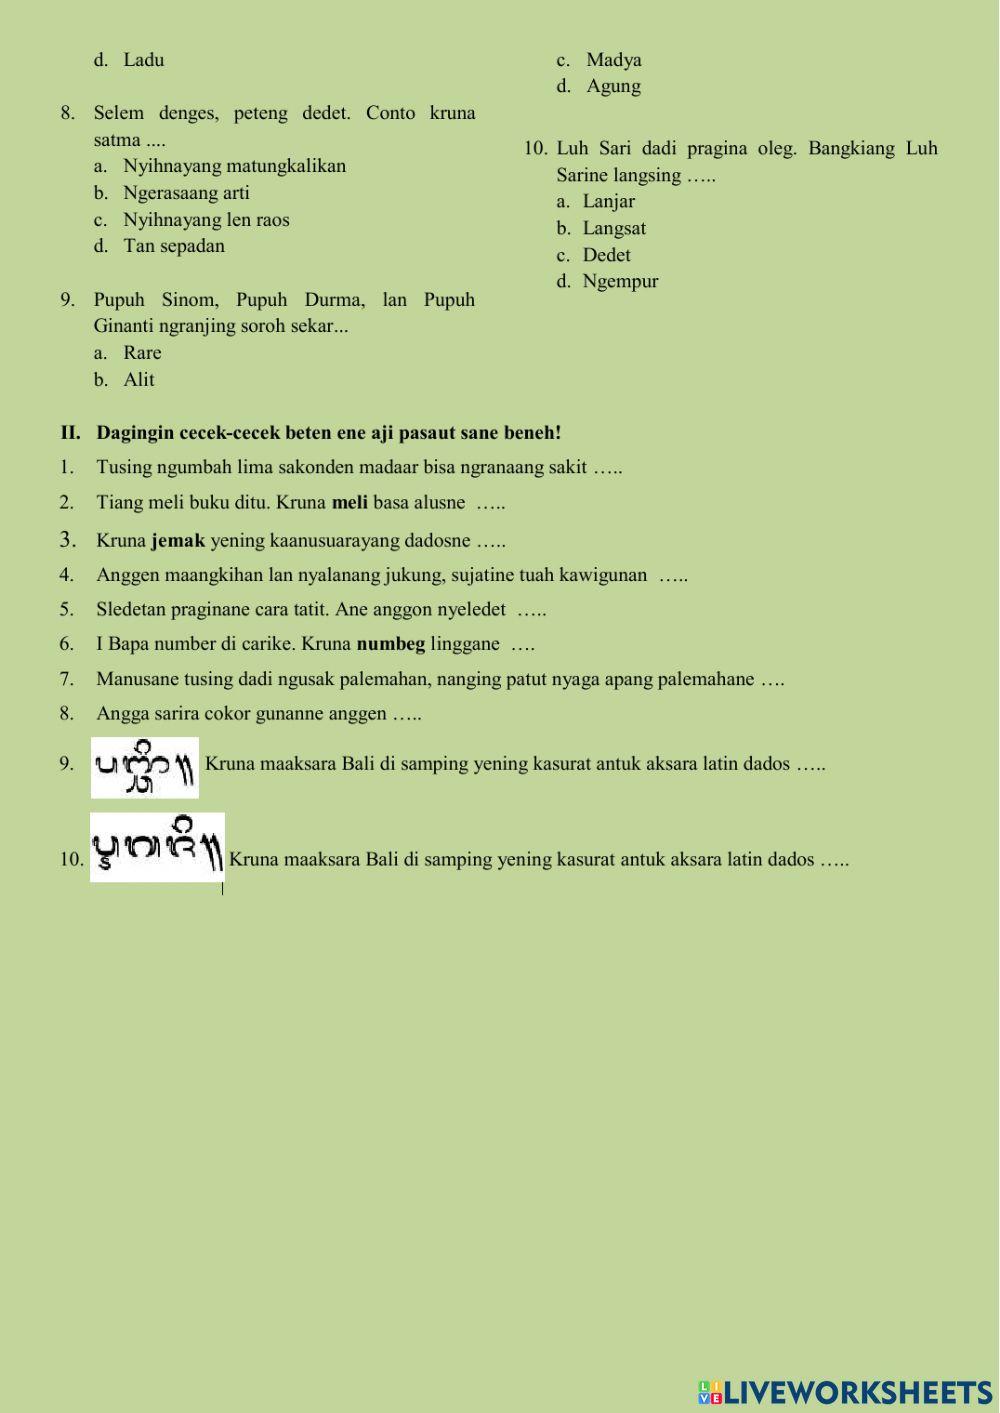 PTS I - Bahasa Bali utk kelas 5